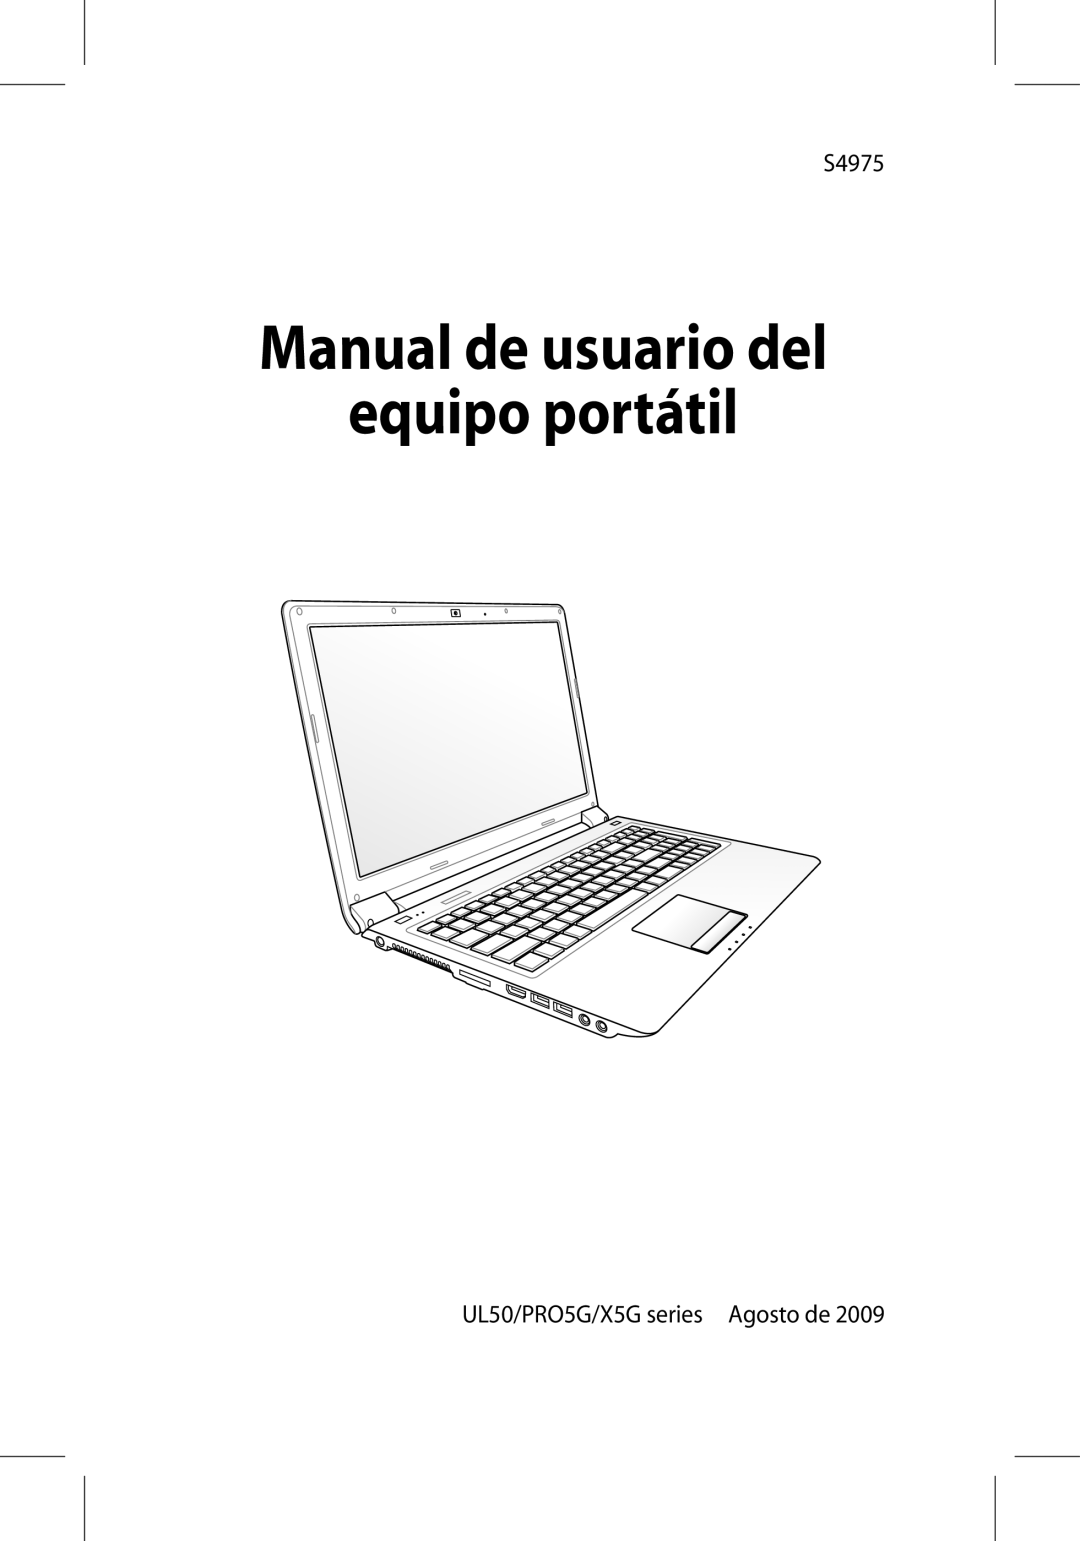 Asus manual S4975, UL50/PRO5G/X5G series Agosto de, Manual de usuario del equipo portátil 